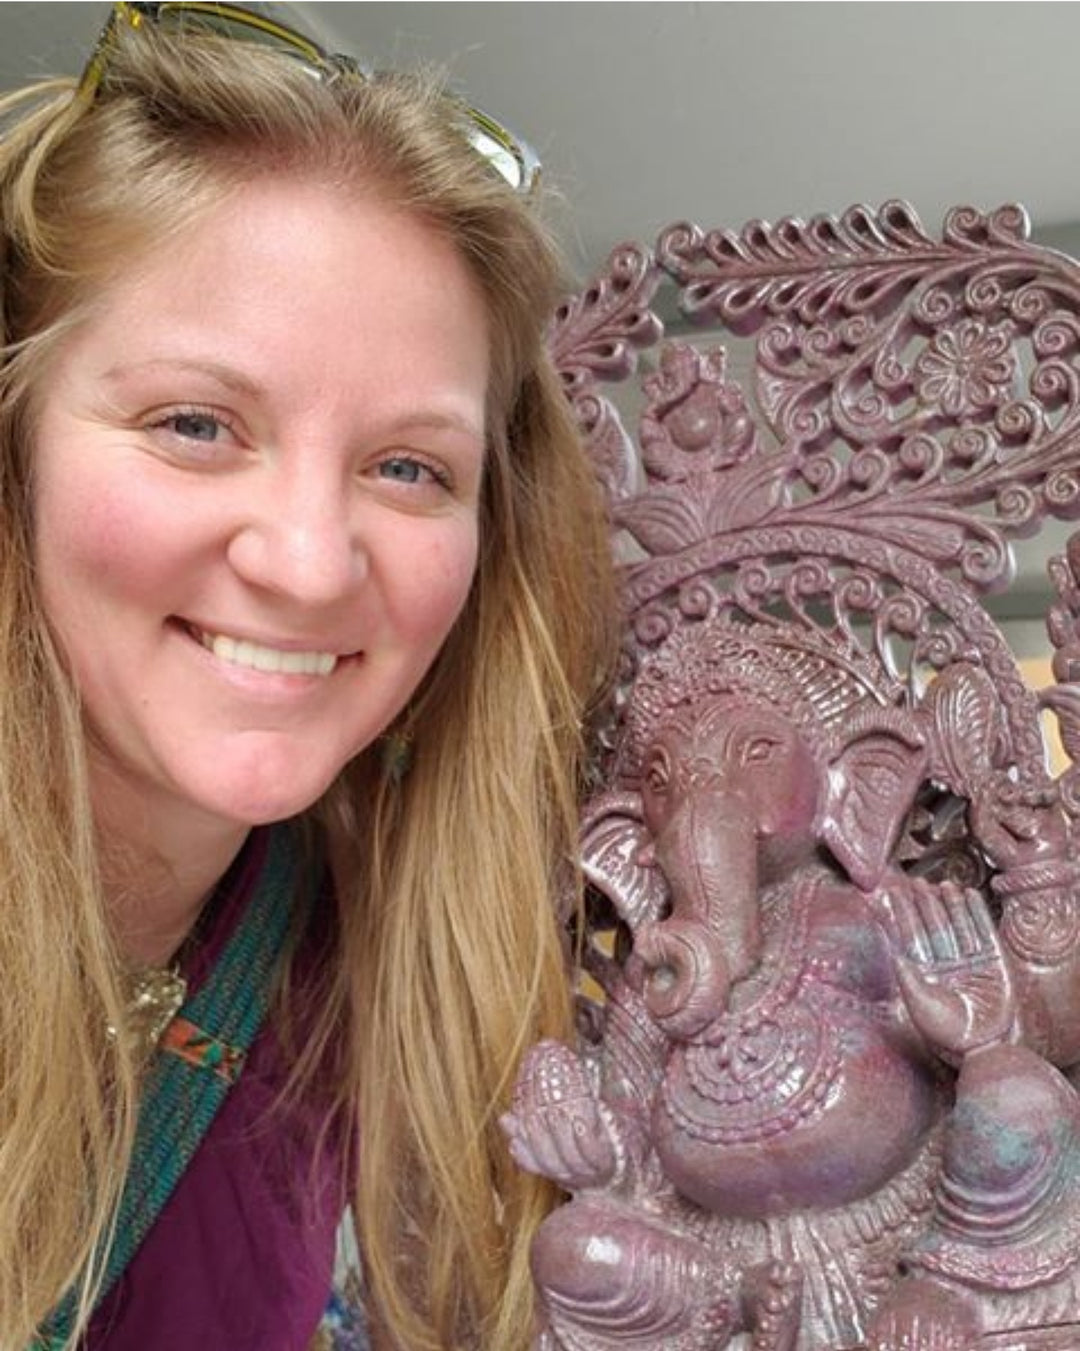 My journey of Healing Through Hindu Mythology